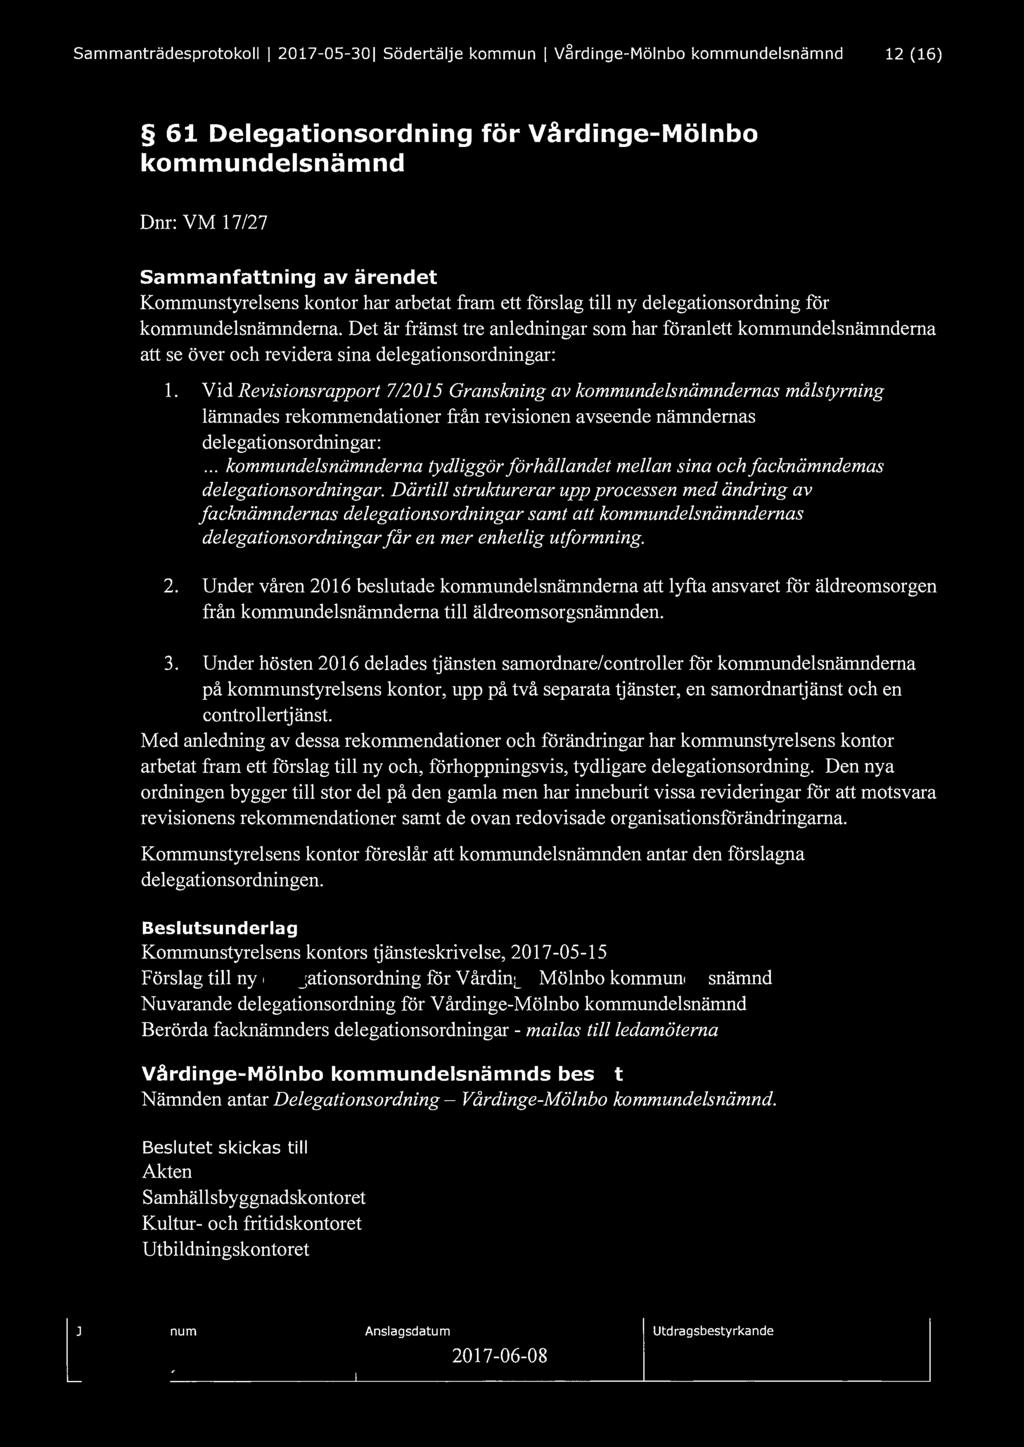 Sammanträdesprotokoll I 2017-05-301 Södertälje kommun J V~rdinge-Mölnbo kommundelsnämnd 12 (16) 61 Delegationsordning för Vårdinge-Mölnbo kommundelsnämnd Dnr: VM 1 7 /27 Sammanfattning av ärendet